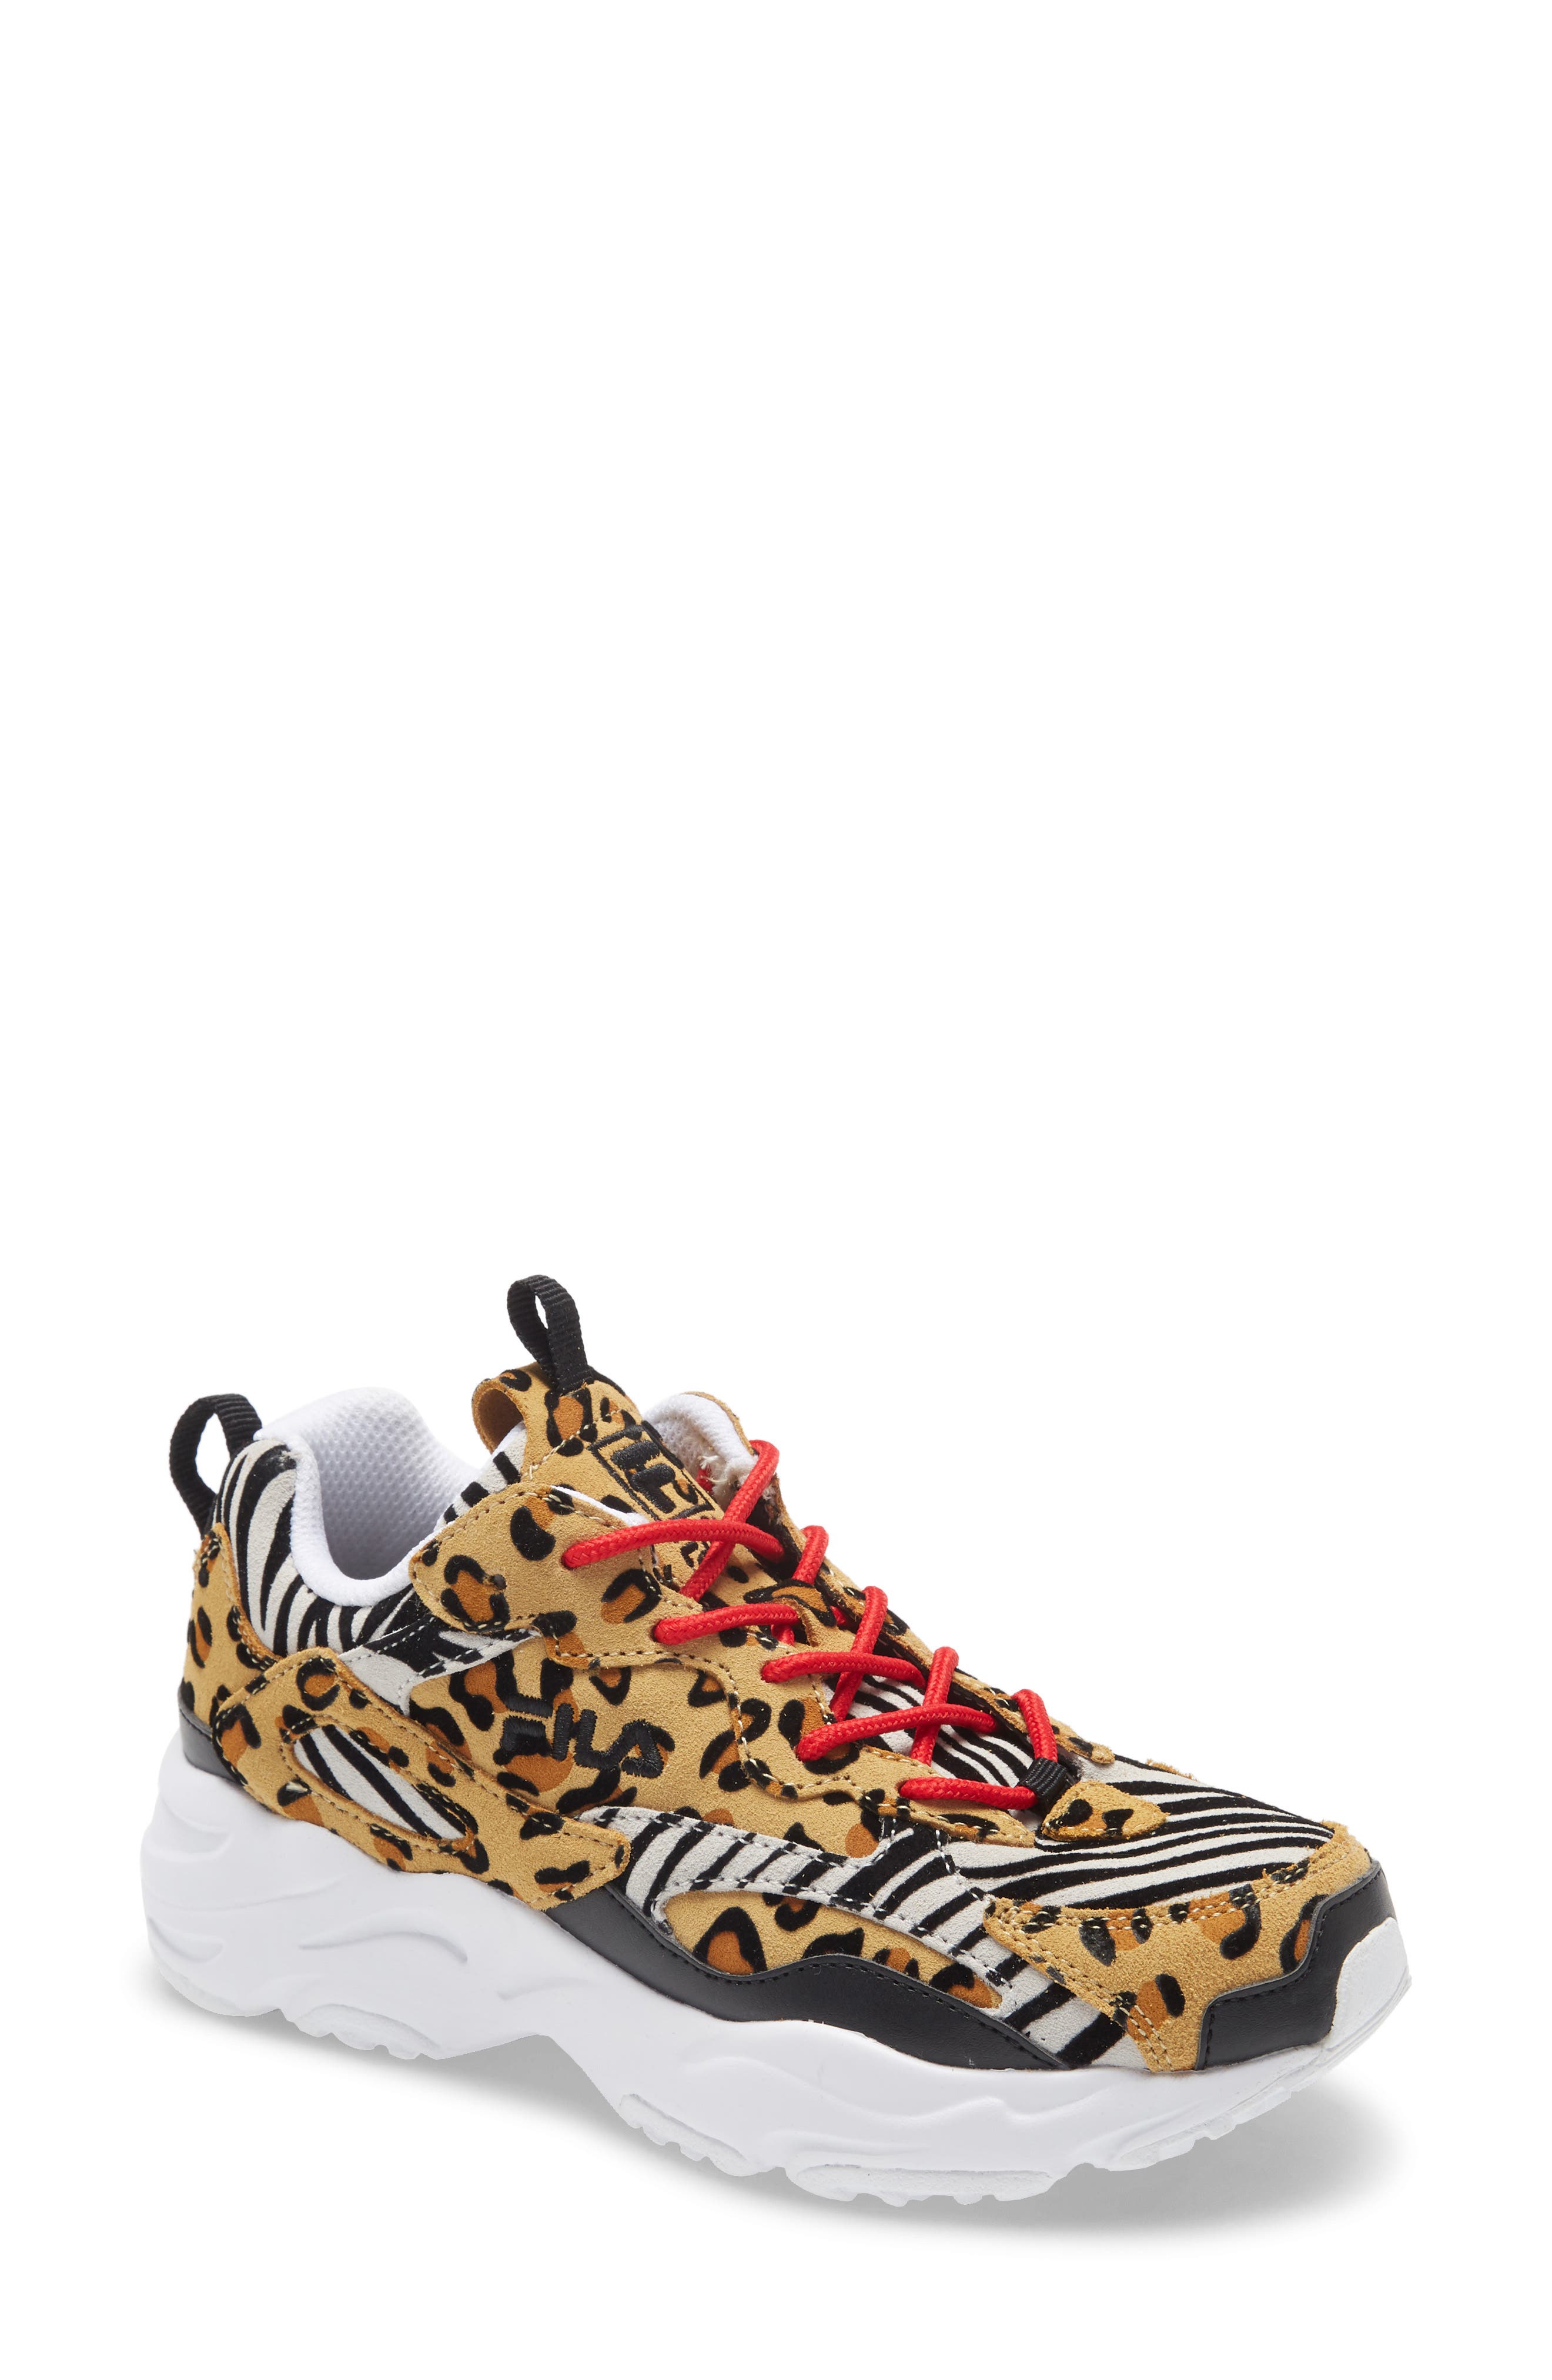 fila leopard sneakers